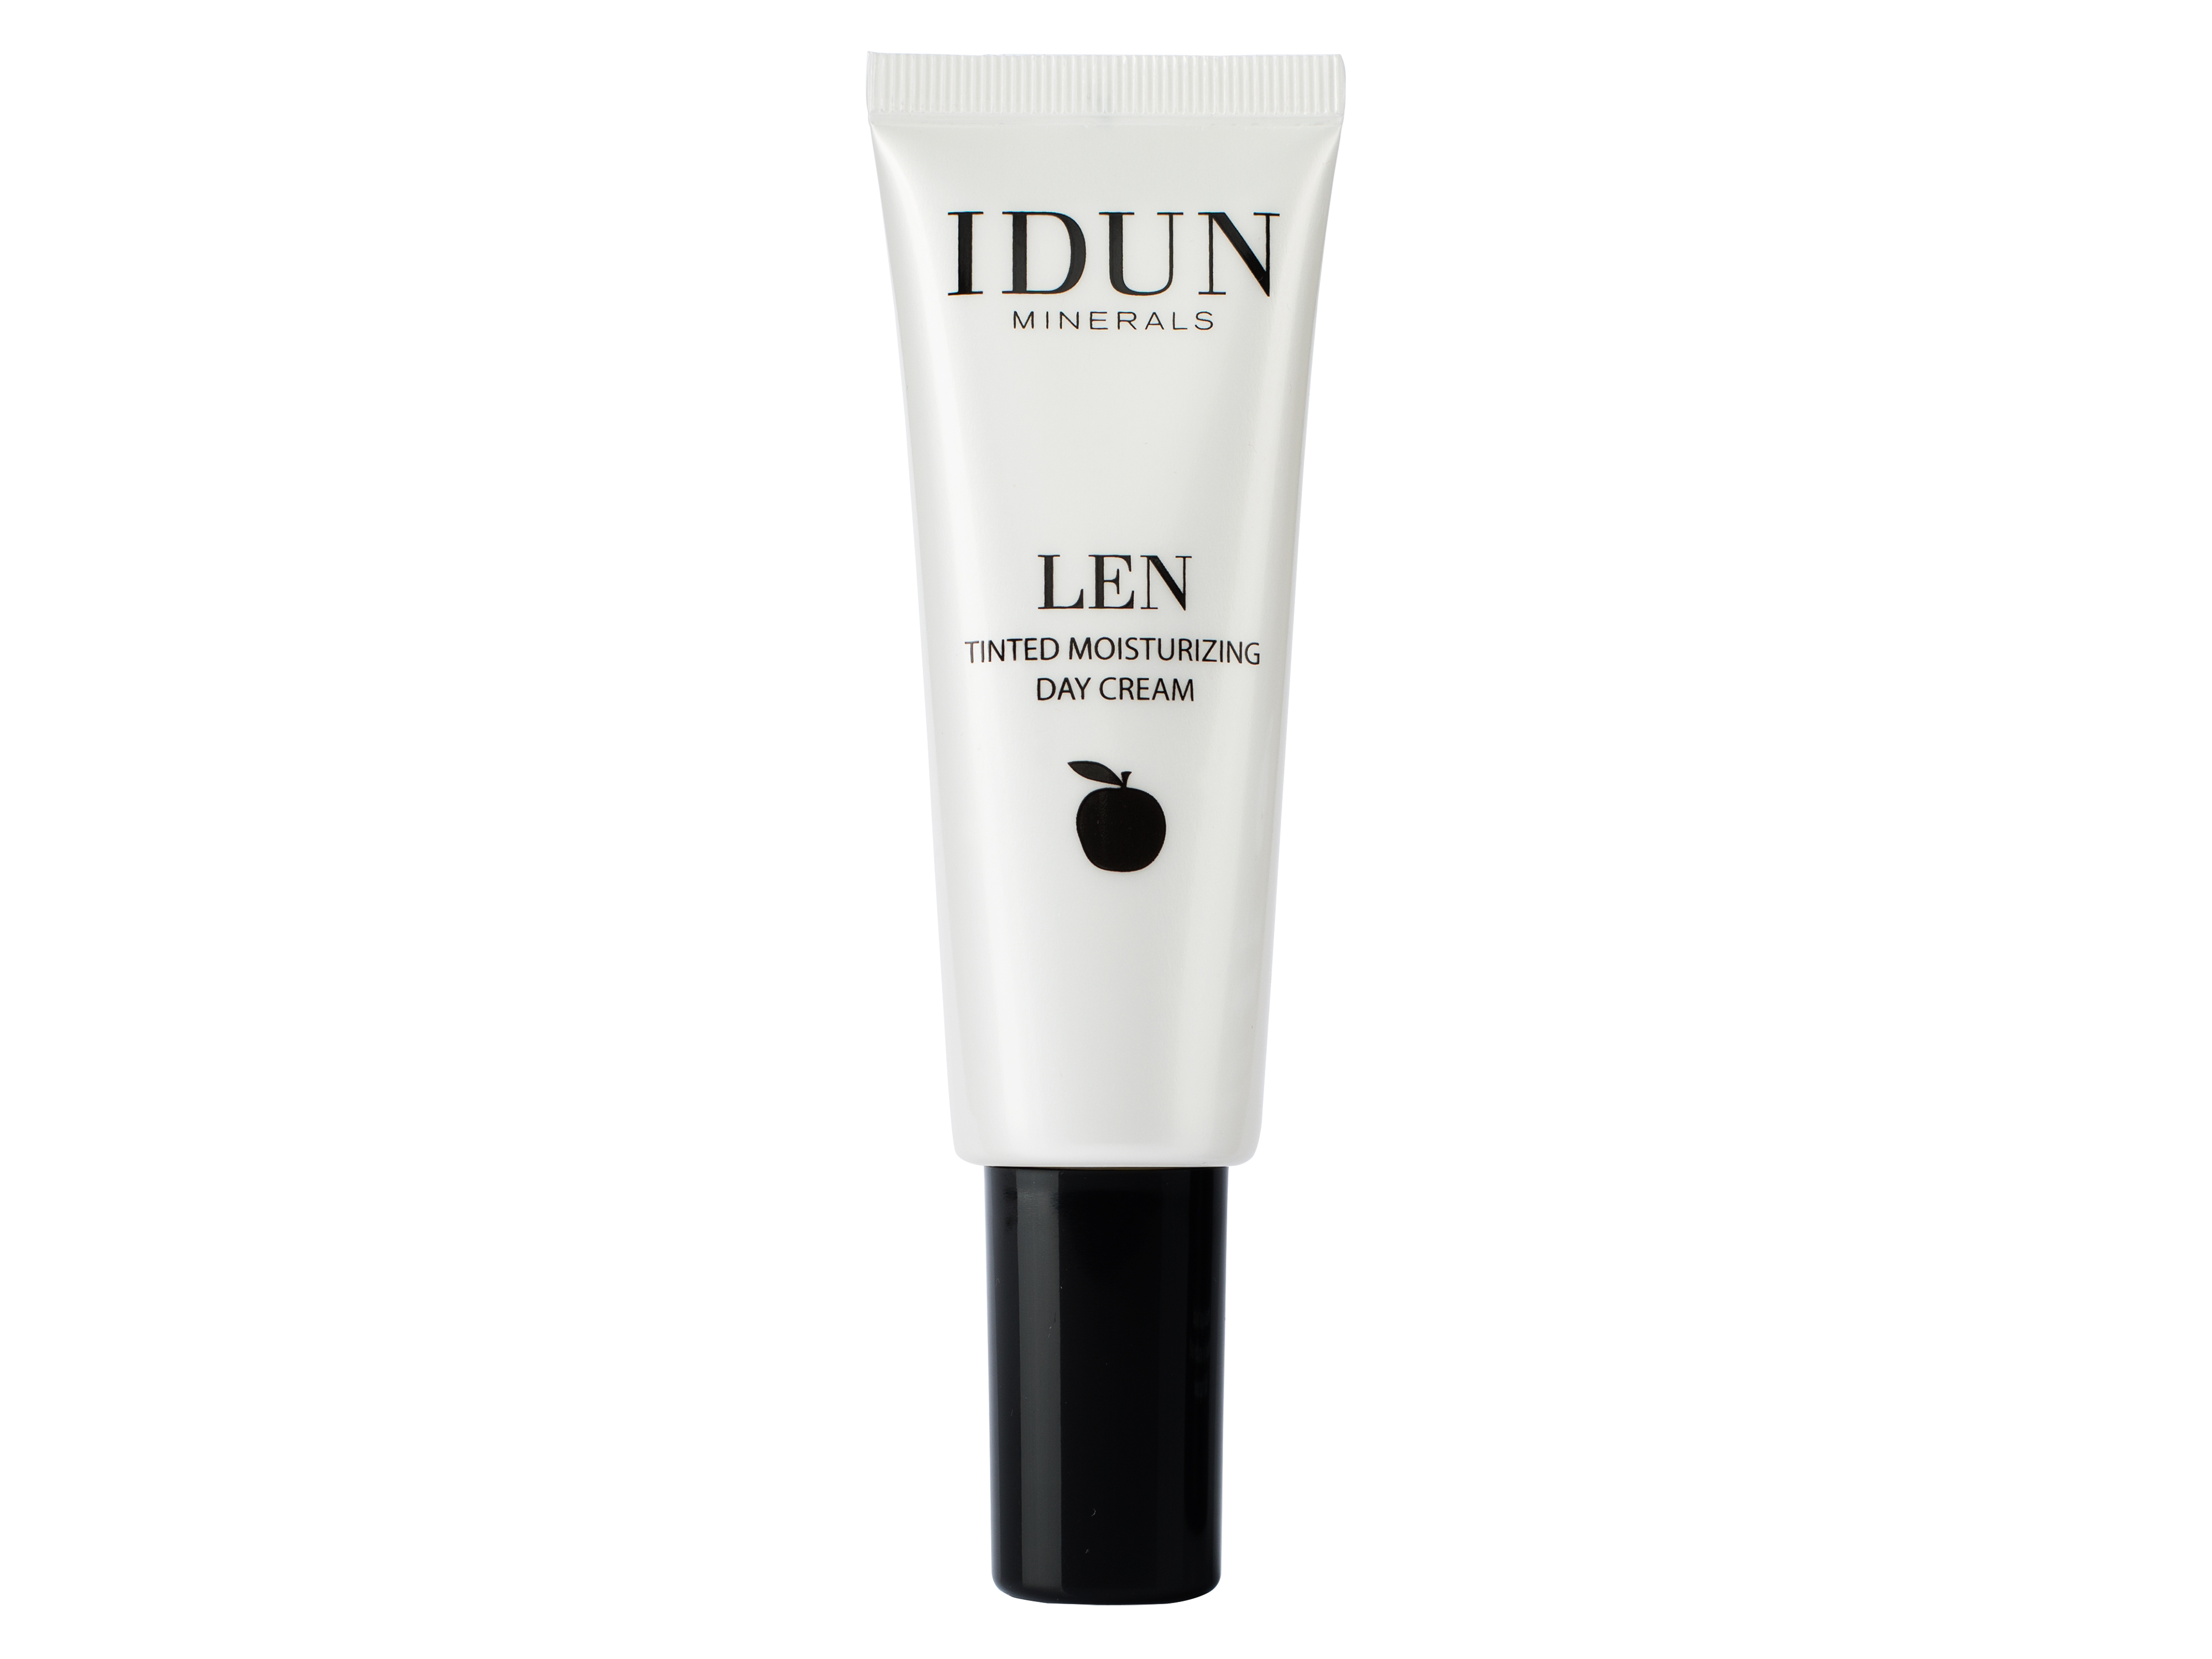 IDUN Minerals IDUNMinerals LEN Tinted Day Cream Deep, 50 ml